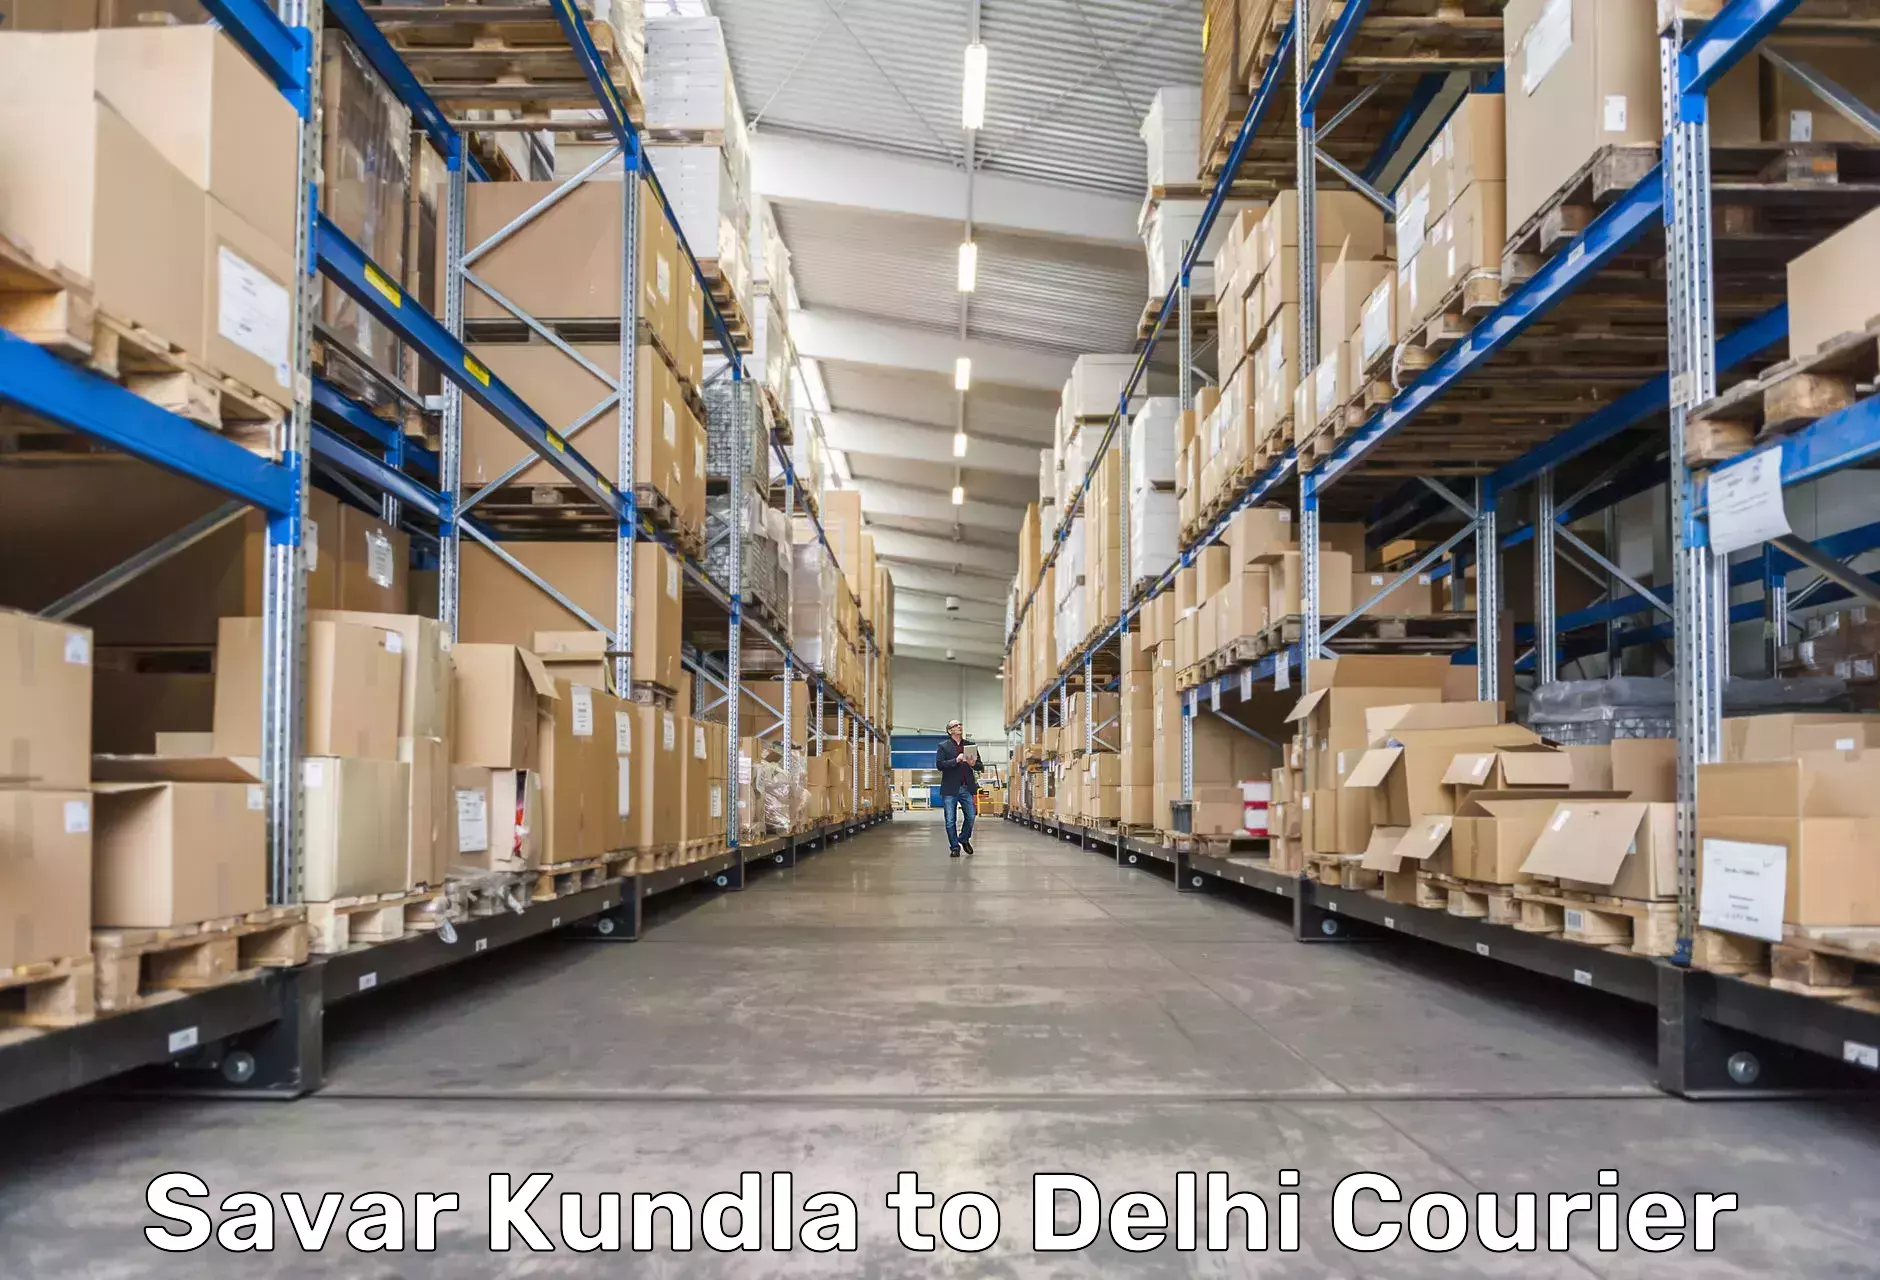 Subscription-based courier Savar Kundla to Delhi